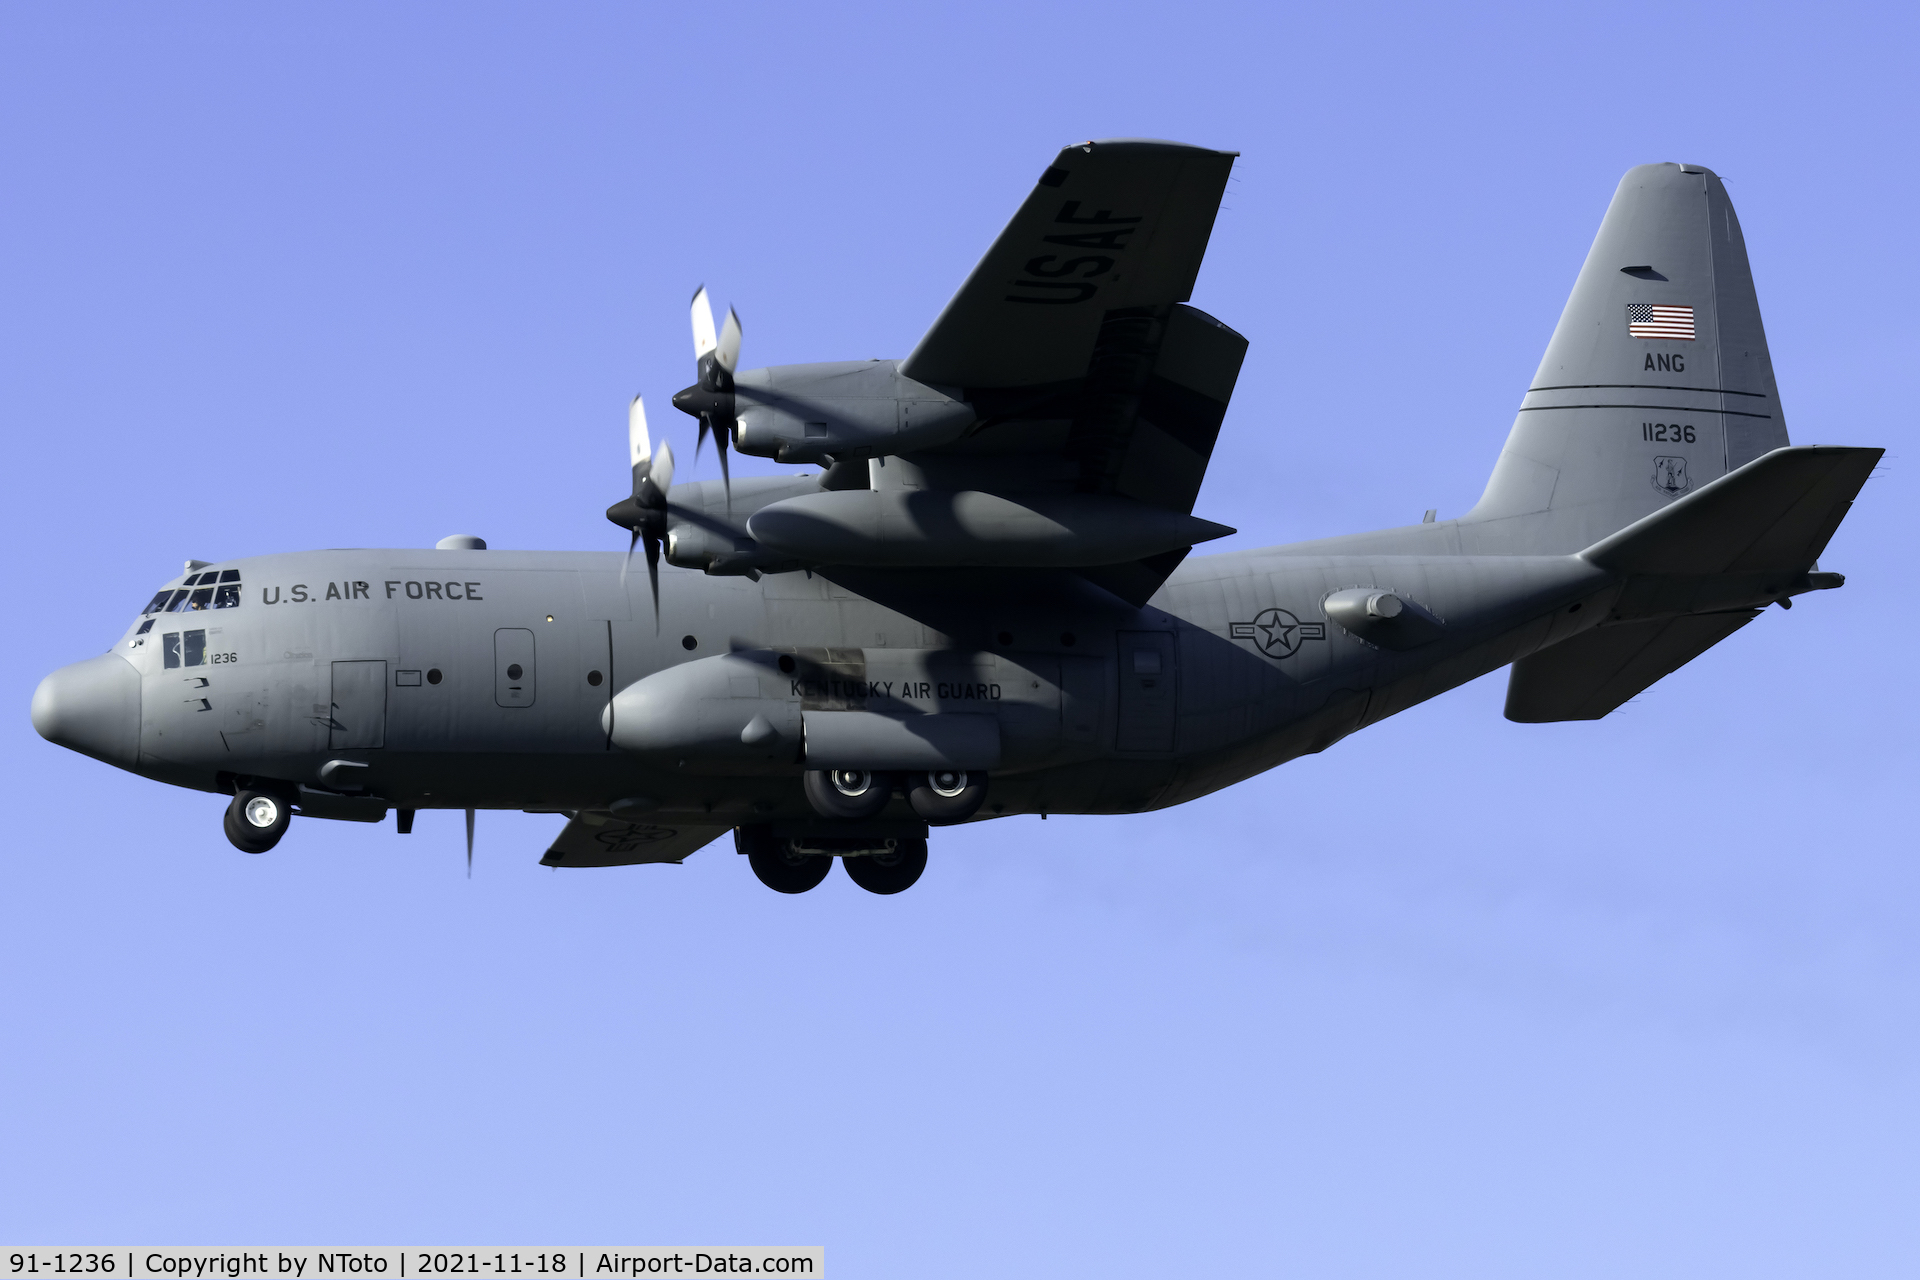 91-1236, 1991 Lockheed C-130H Hercules C/N 382-5286, Plane